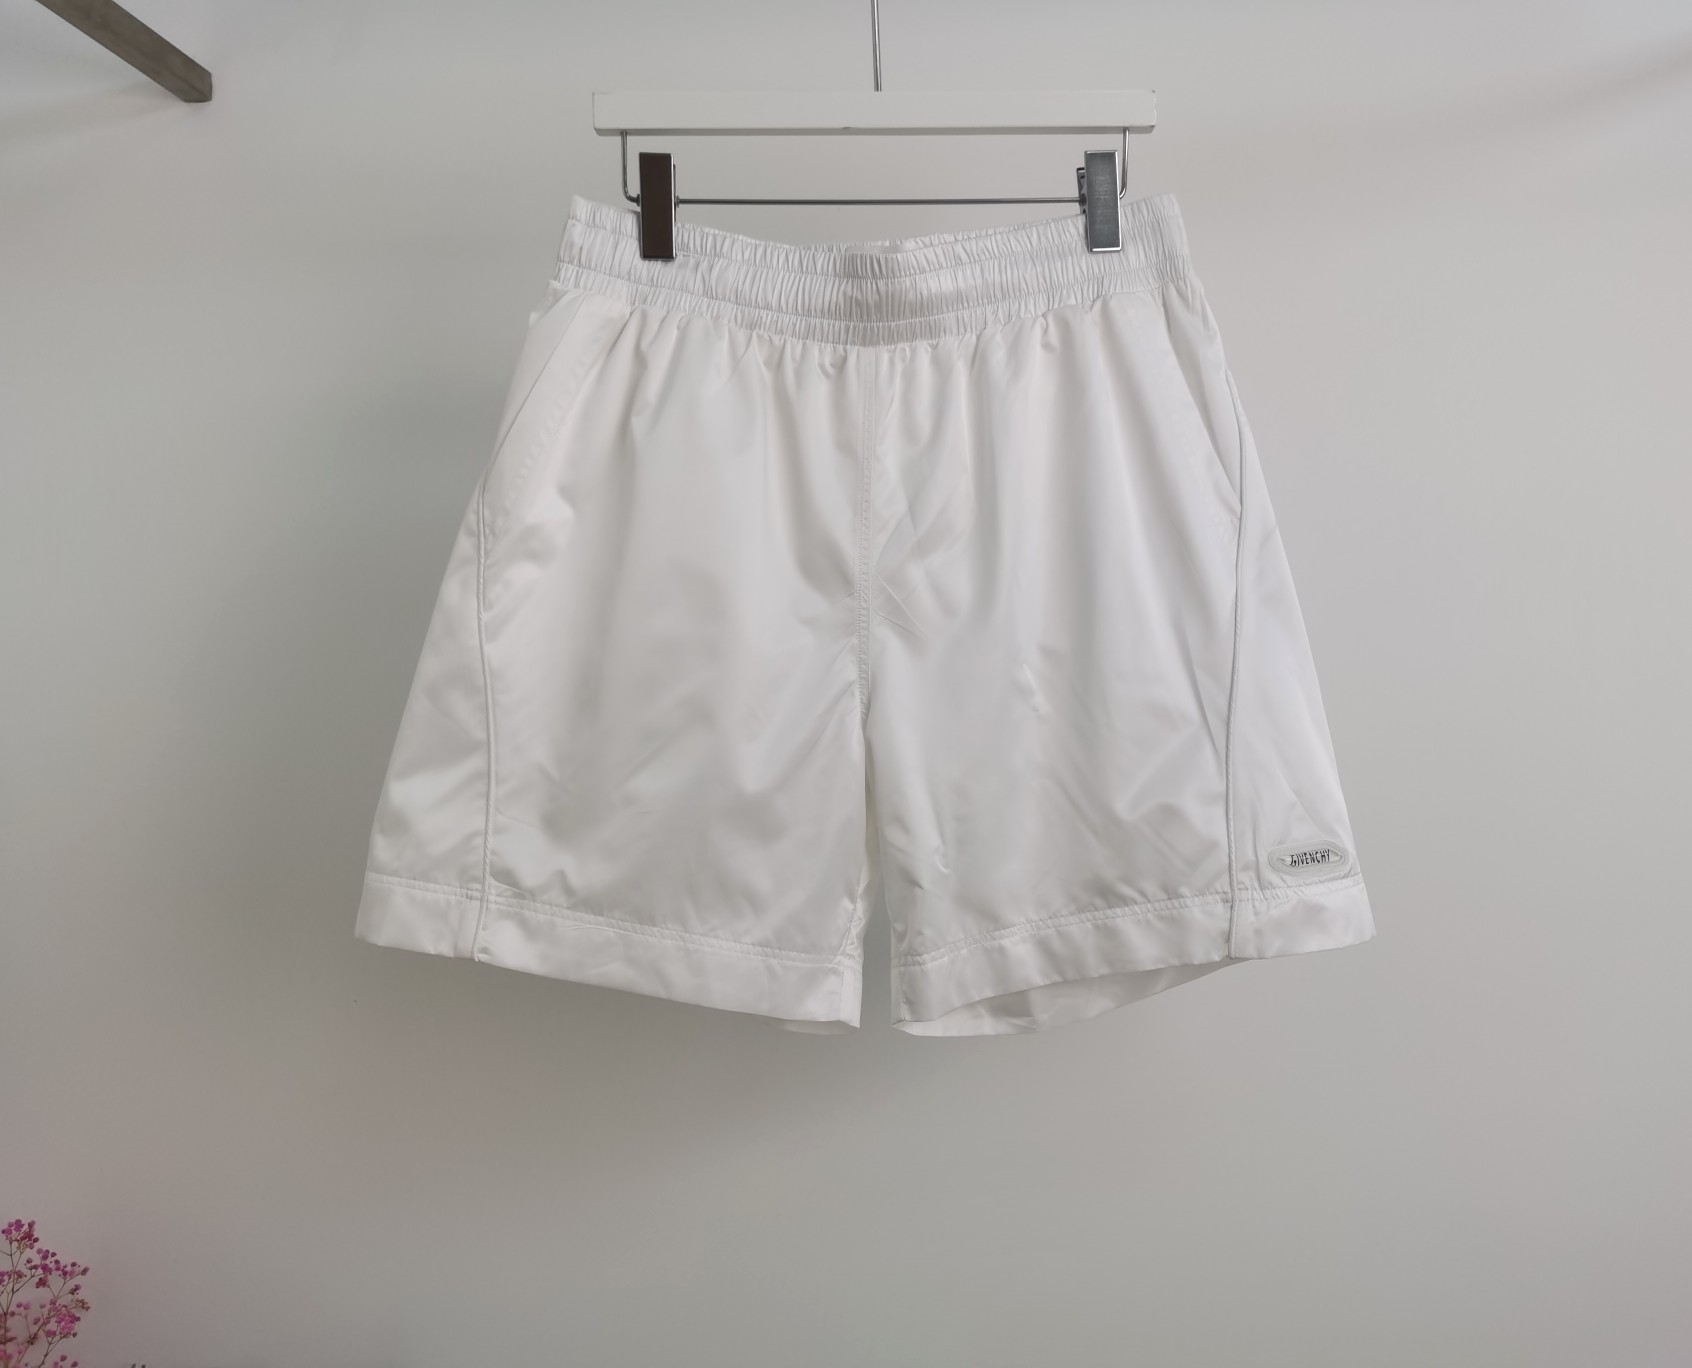 GVC  夏装新款运动尼龙短裤  定做Logo小标 内里网眼里布 透气舒适 宽松版型 S XL